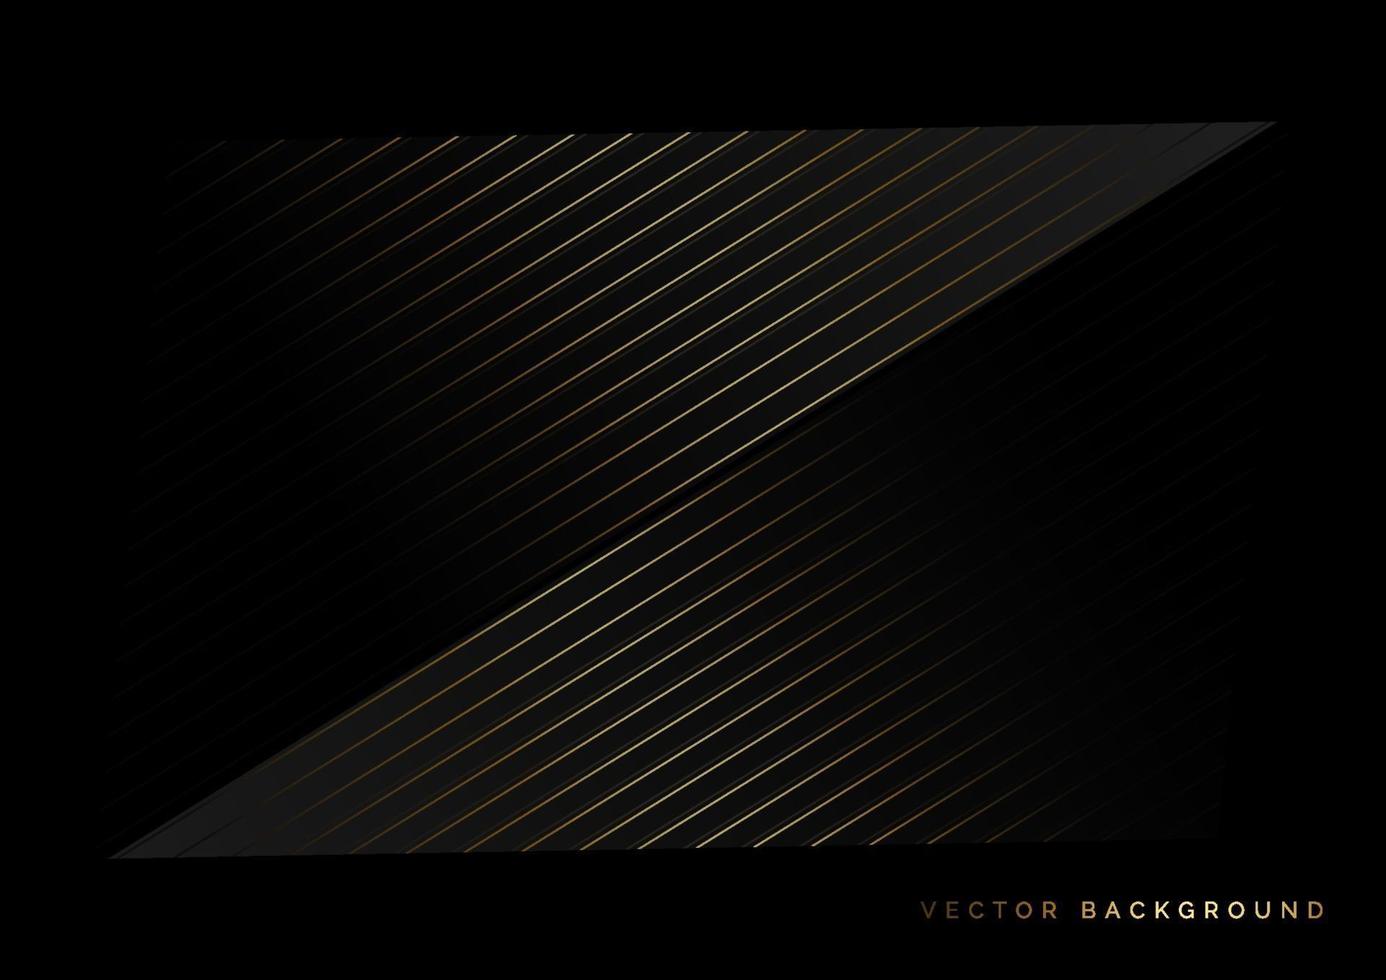 abstracte strepen gouden lijnen diagonale overlapping op zwarte achtergrond. luxe stijl. vector